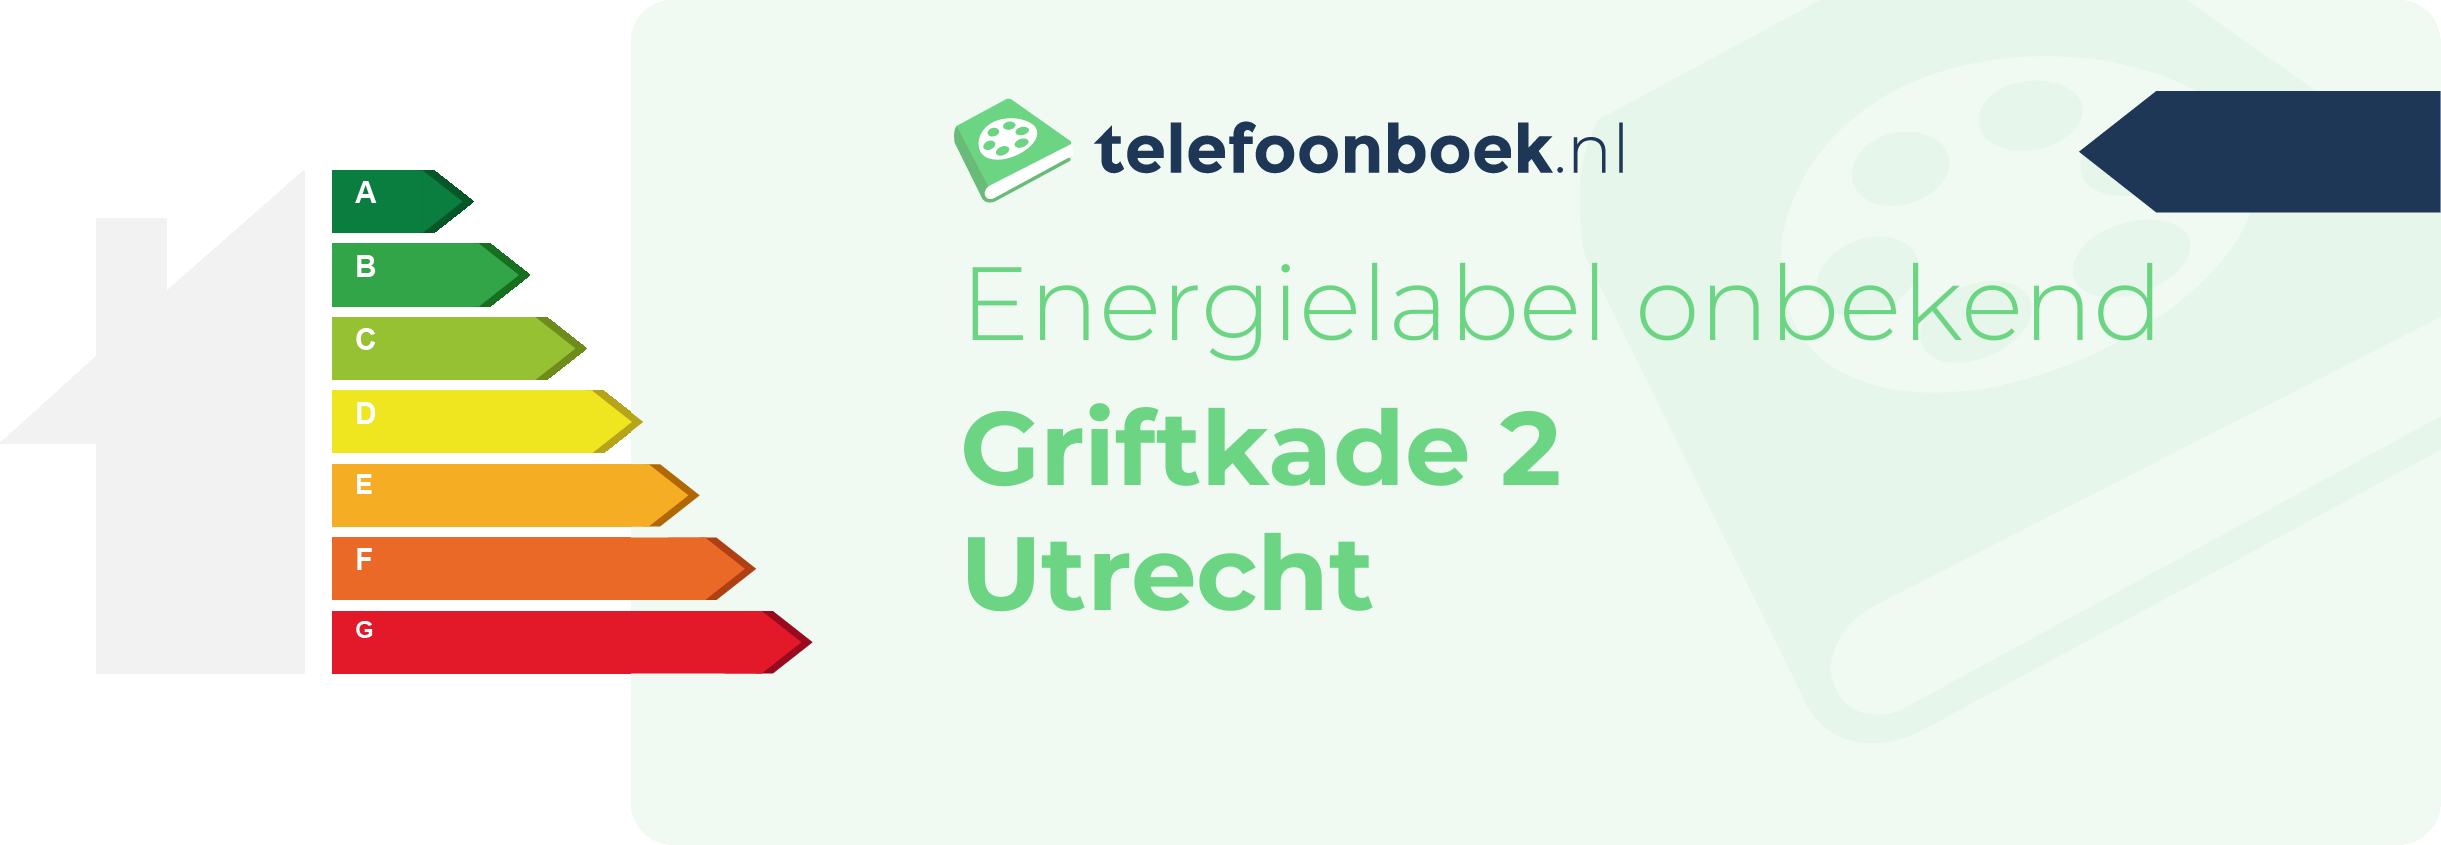 Energielabel Griftkade 2 Utrecht